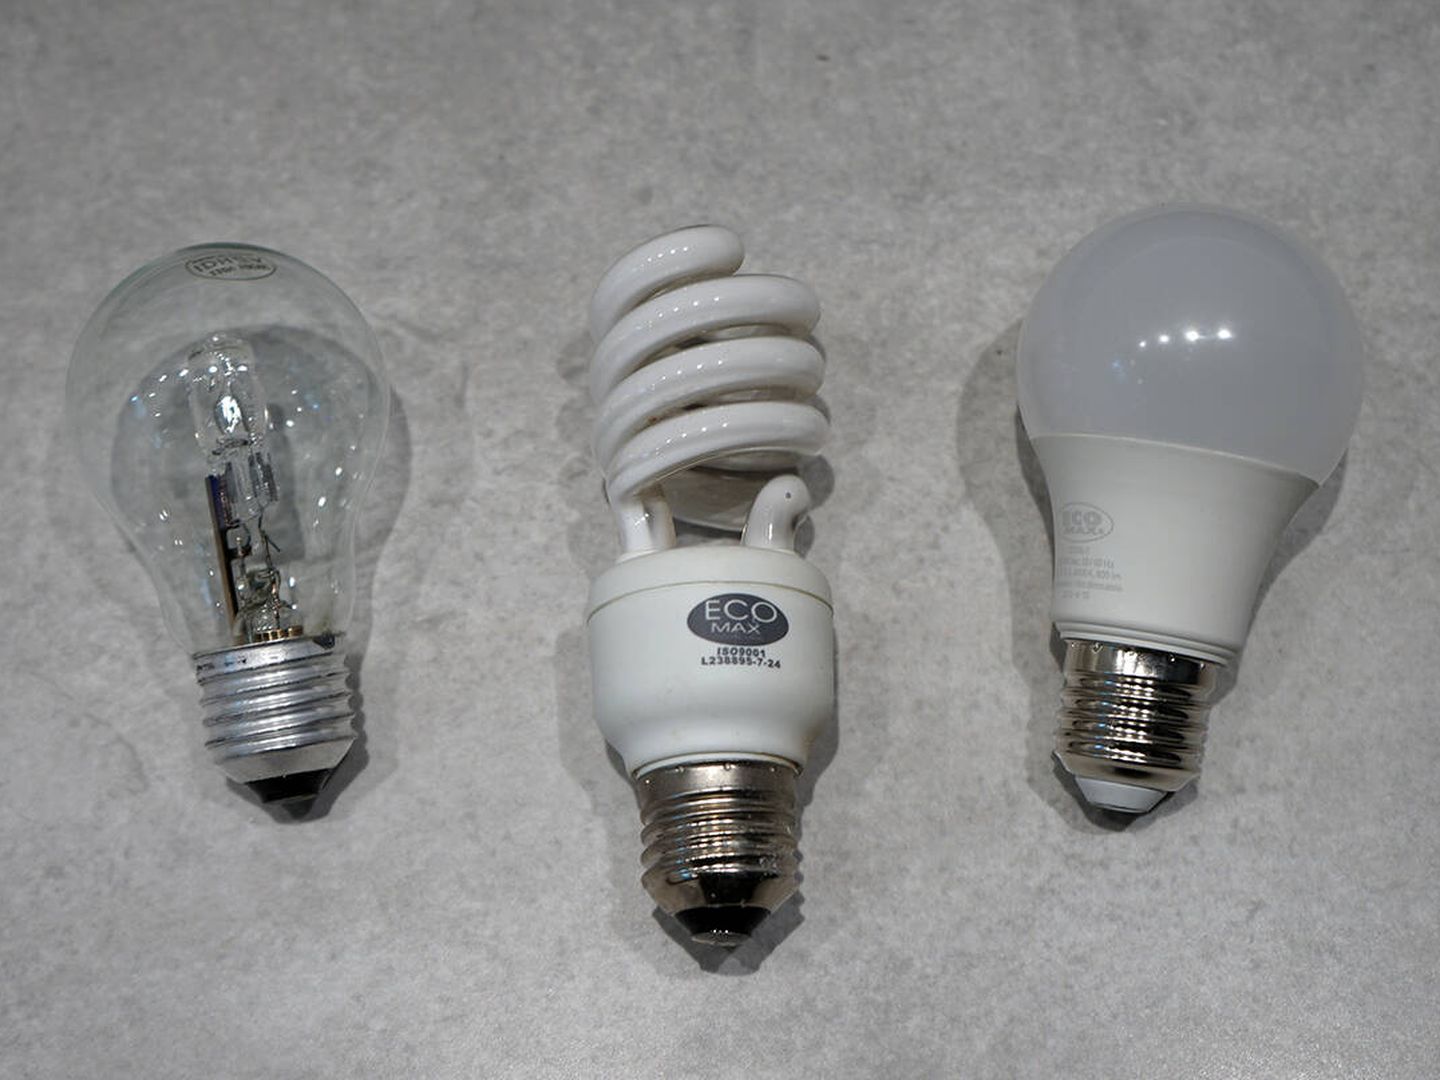 De izquierda a derecha, una bombilla incandescente, una bombilla CFL, y una bombilla LED.